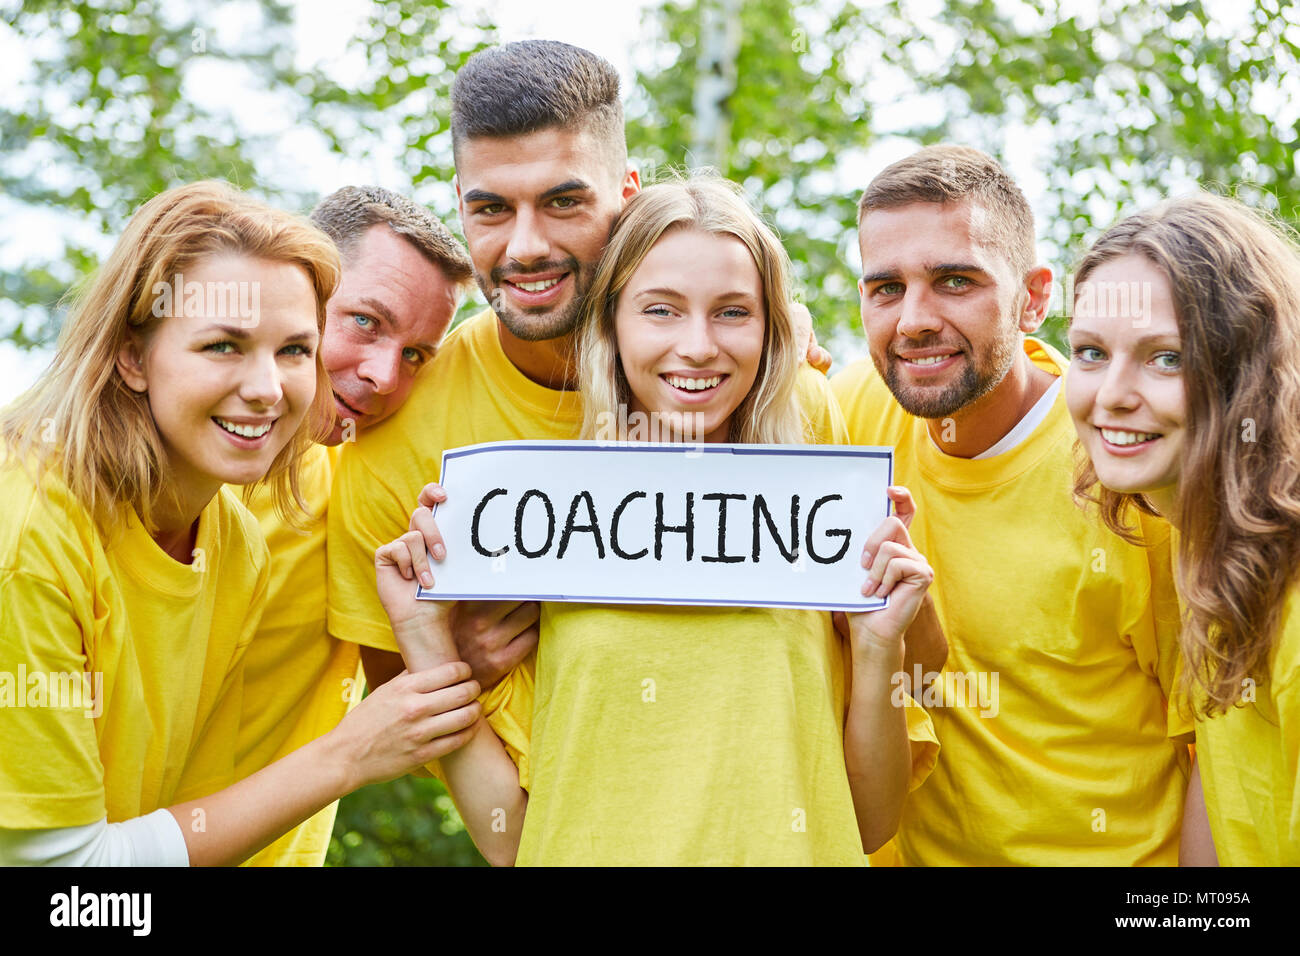 Grupo o Equipo tiene coaching inscribirse en el taller de teambuilding Foto de stock